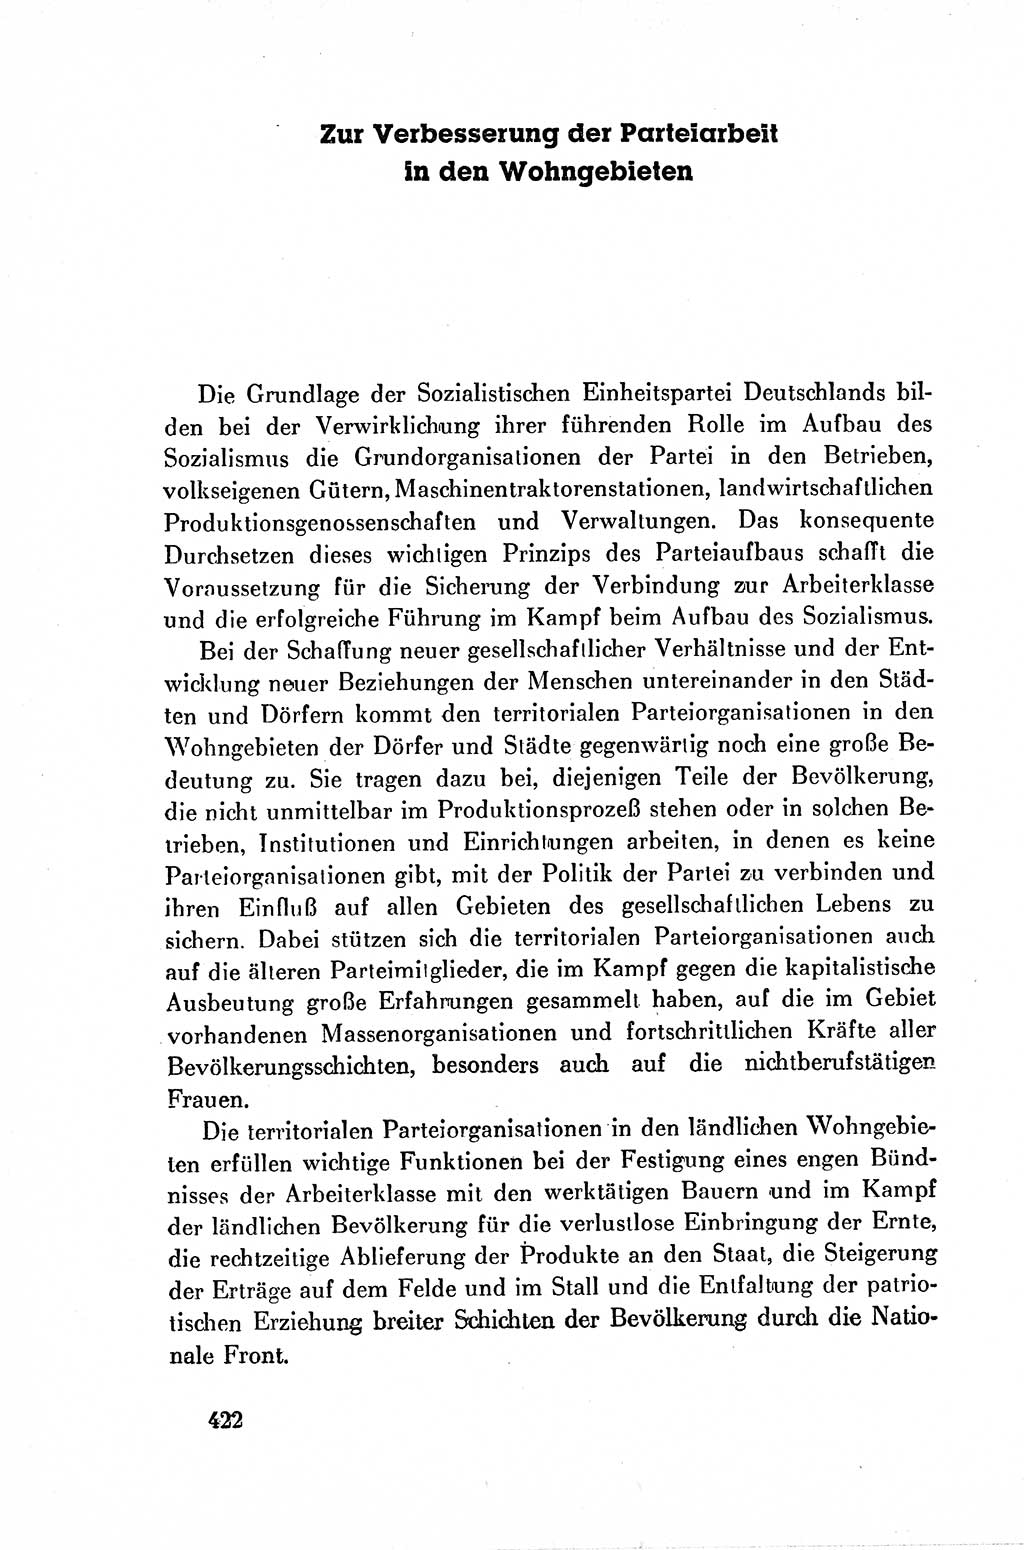 Dokumente der Sozialistischen Einheitspartei Deutschlands (SED) [Deutsche Demokratische Republik (DDR)] 1954-1955, Seite 422 (Dok. SED DDR 1954-1955, S. 422)